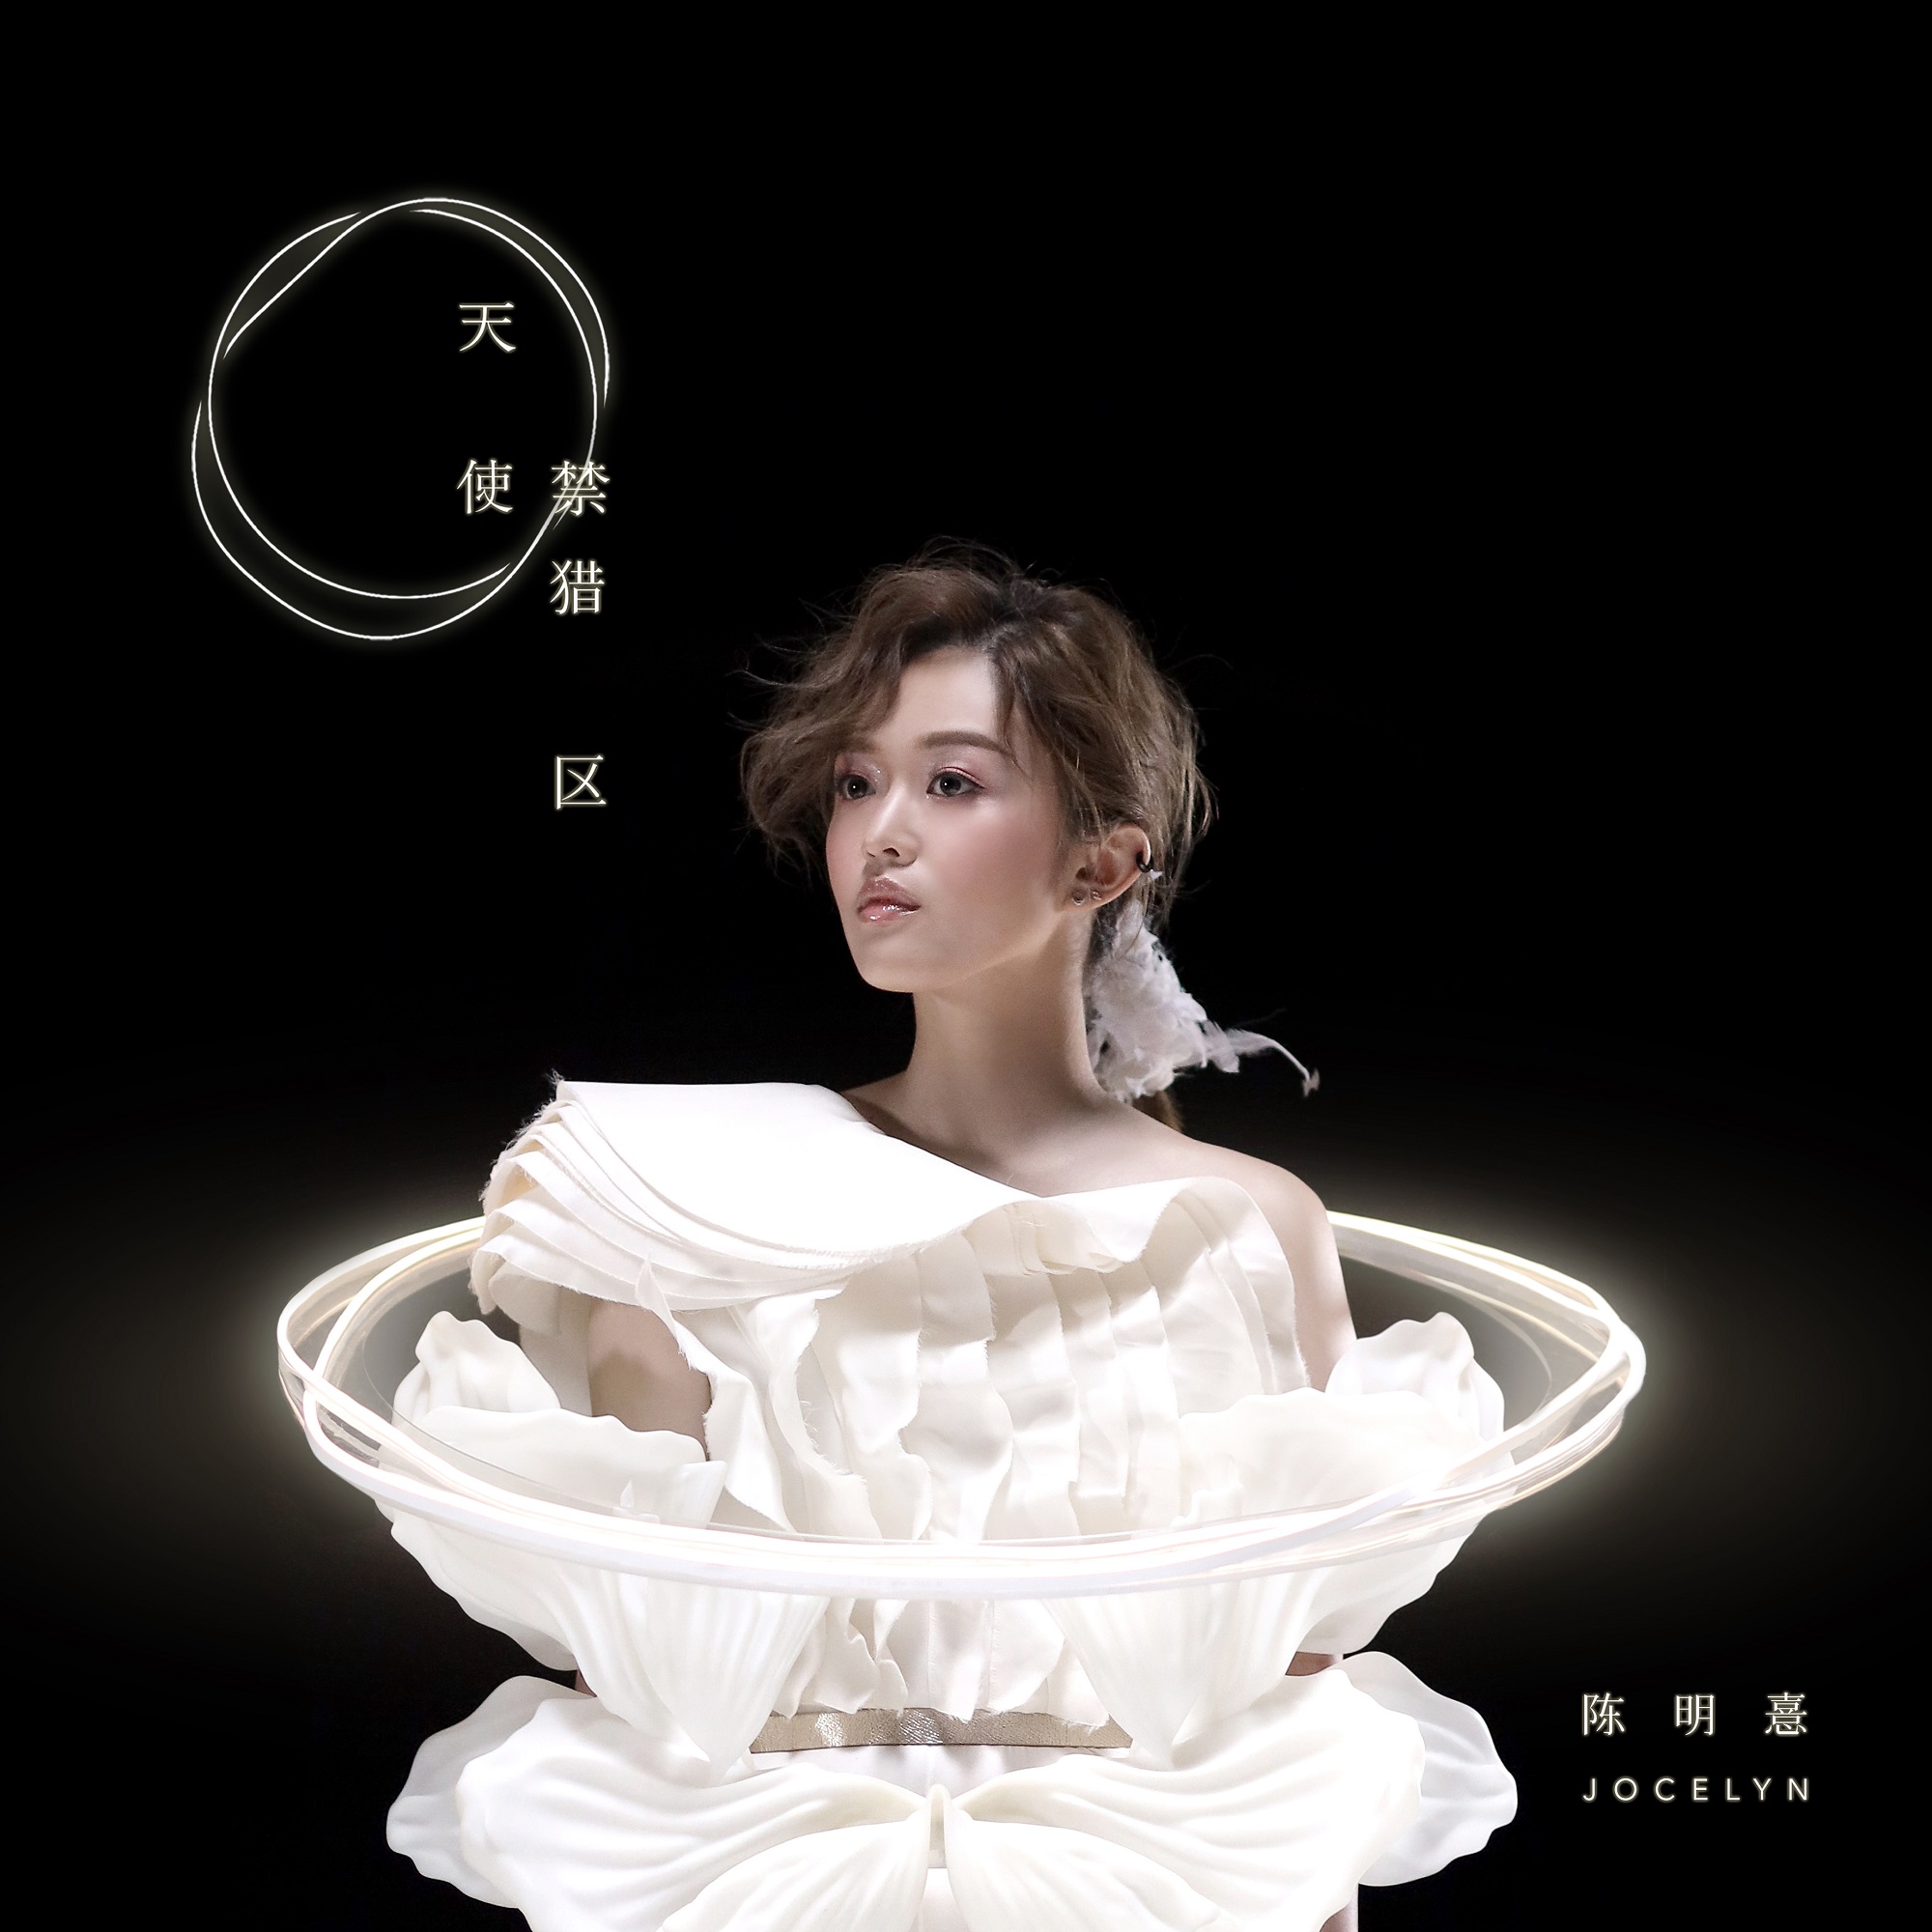 陈明憙Jocelyn《天使禁猎区》今日上线 全新EP12月18日正式发布